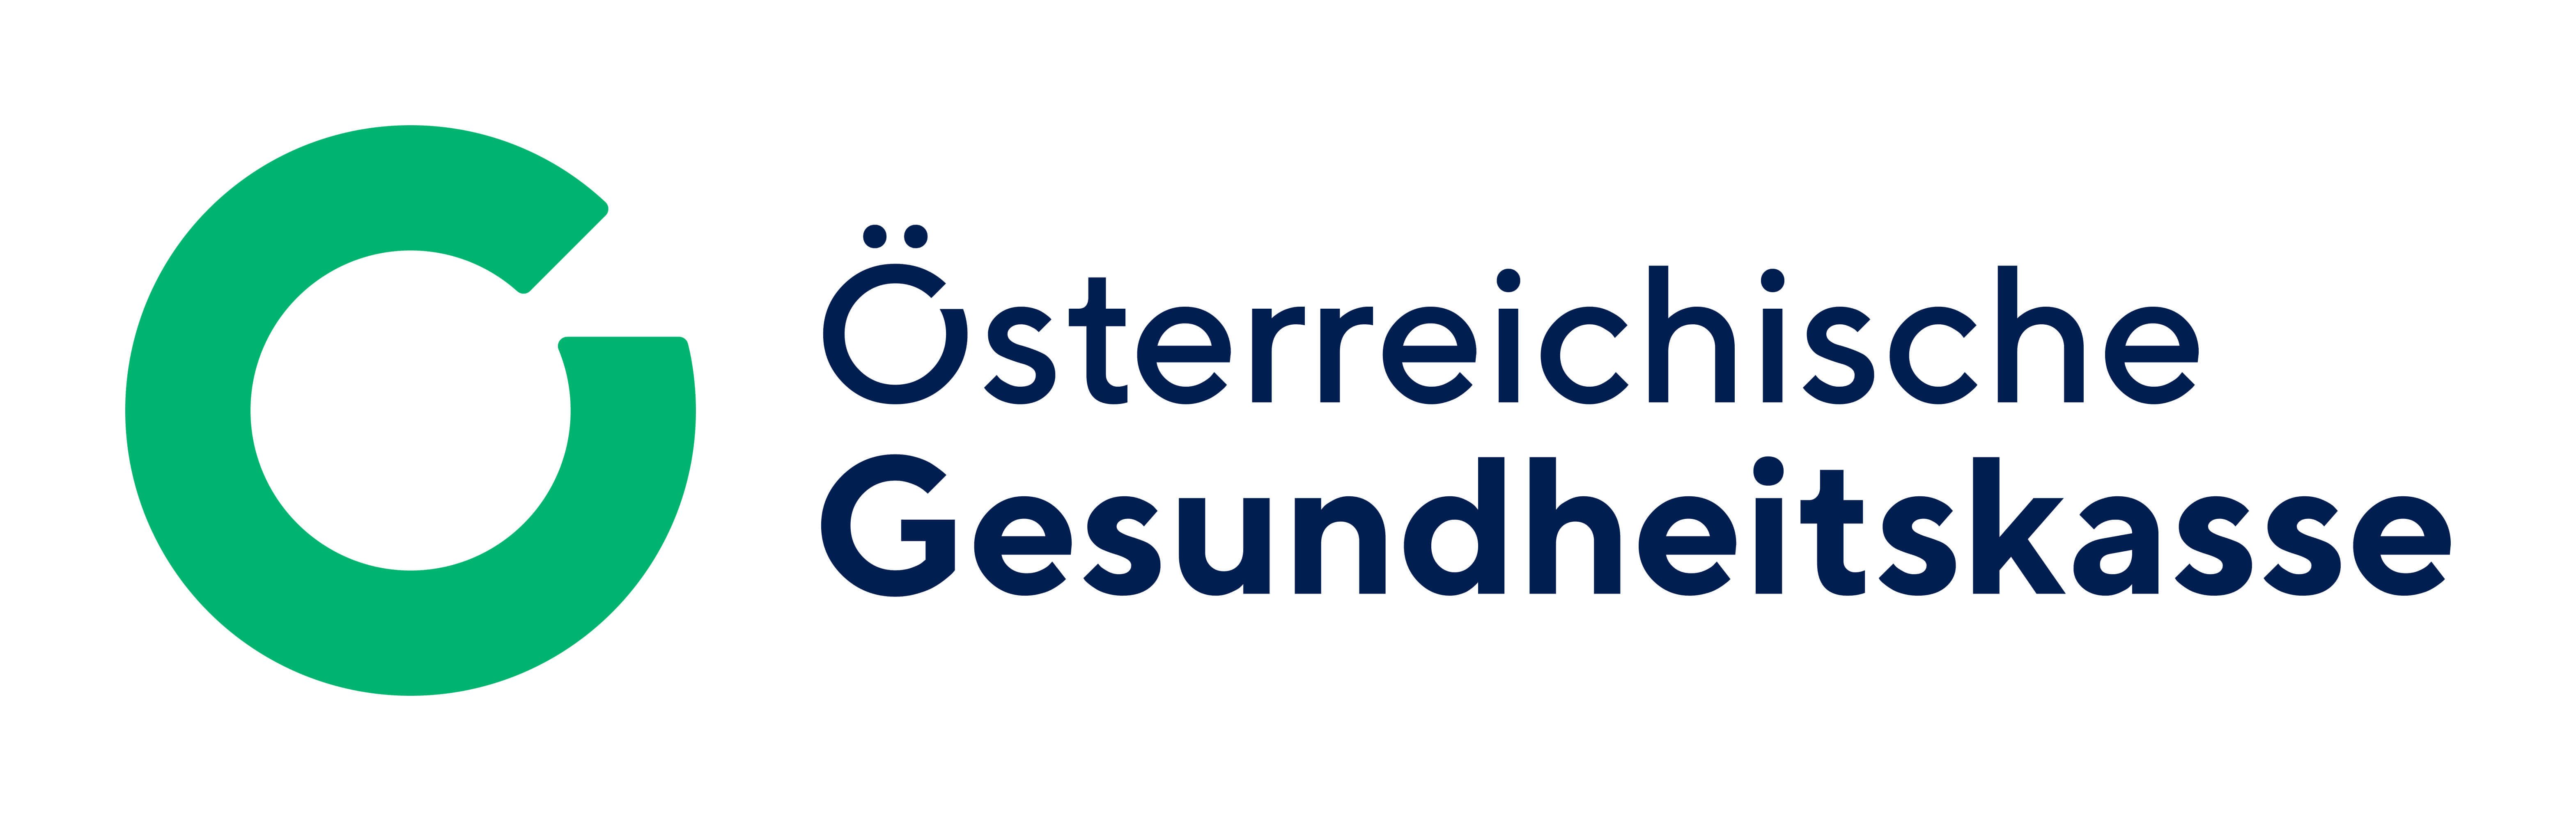 Logo Gesundheitskasse Österreich 